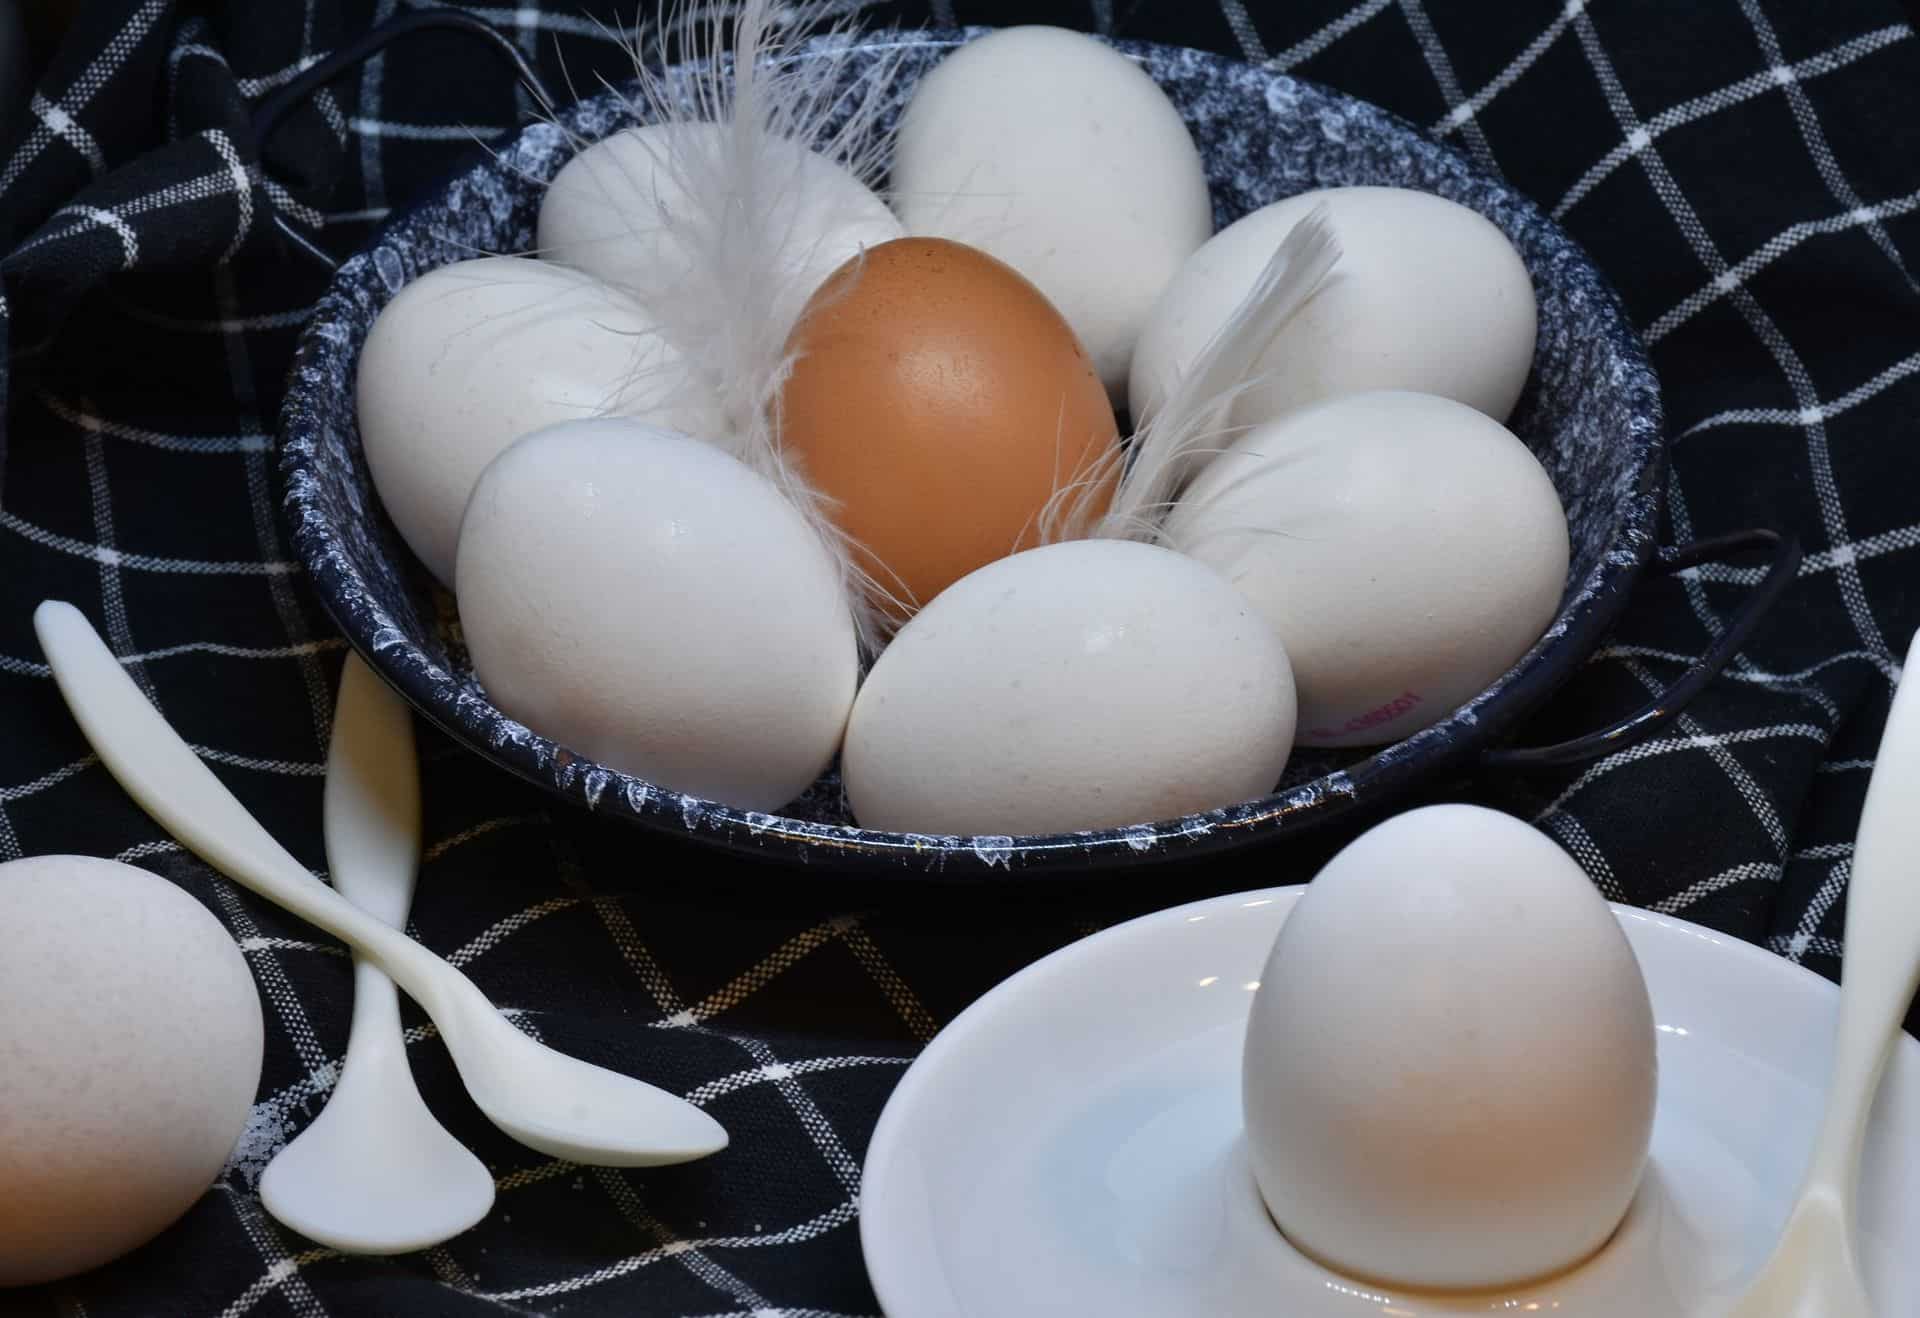 תכולת החלבון והברזל הגבוהה בביצים הופכת אותן למזון מומלץ גם עבור אוכלוסיות ספציפיות כגון ספורטאים בשל כמות החלבון הגבוהה או חולי כליות כחלק מהתפריט המצומצם המותר להם